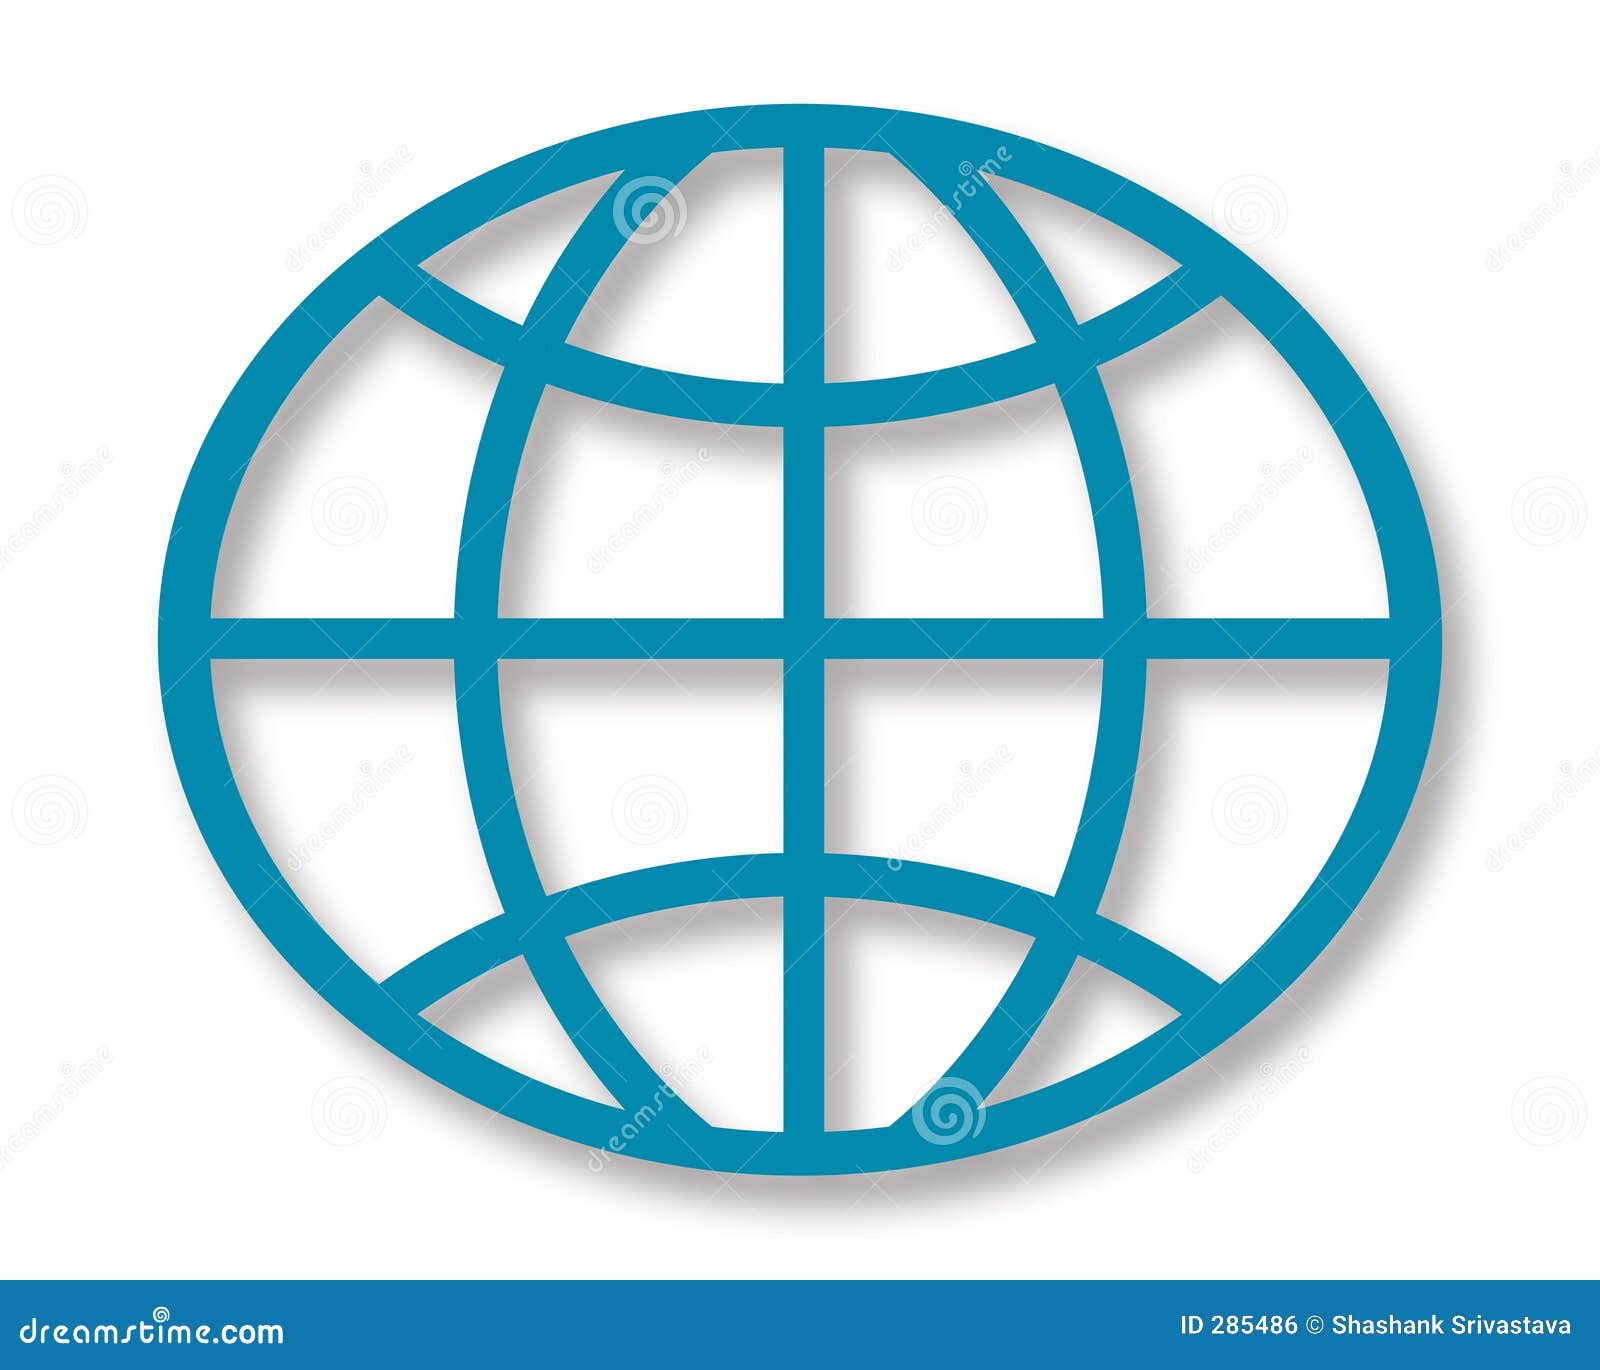 geometrical globe